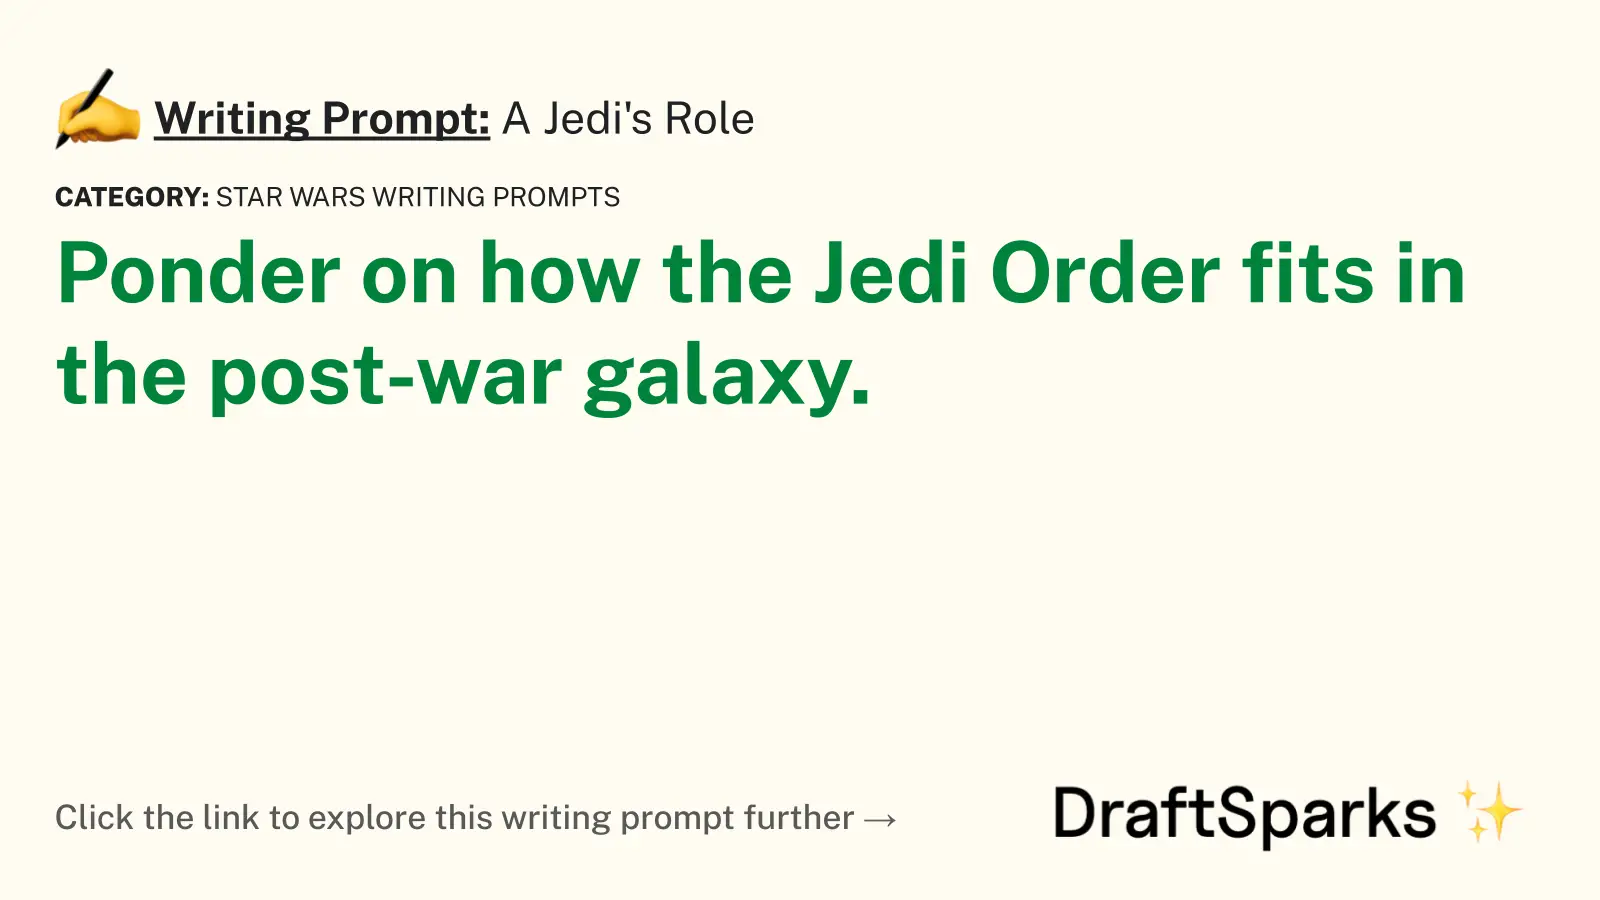 A Jedi’s Role